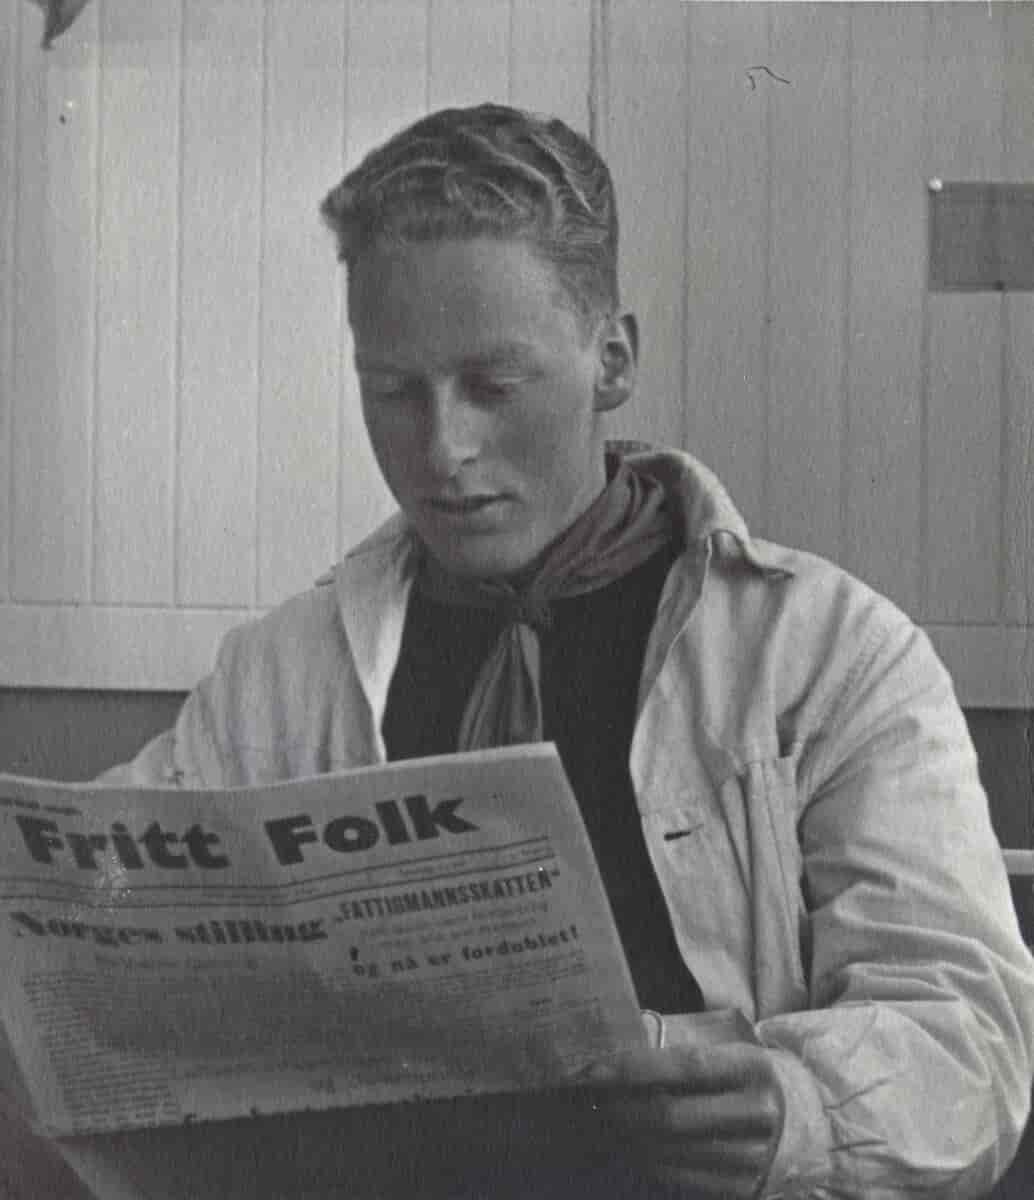 NTH-studenten Erling Corneliussen leser Fritt Folk, foto fra mars/april 1940